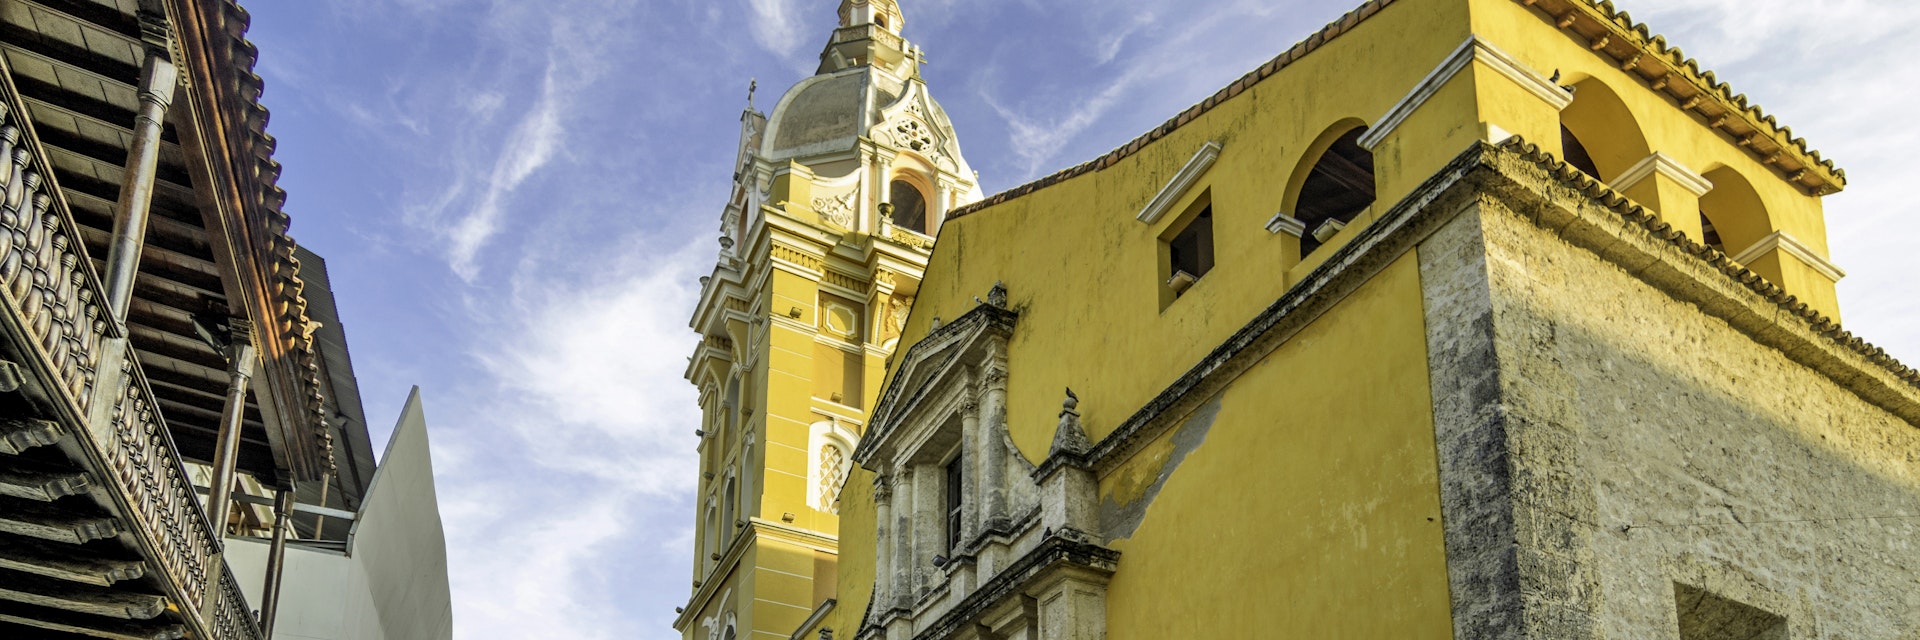 Cathedral Santa Catalina de la Alejandria, Cartagena, Bolivar, Colombia